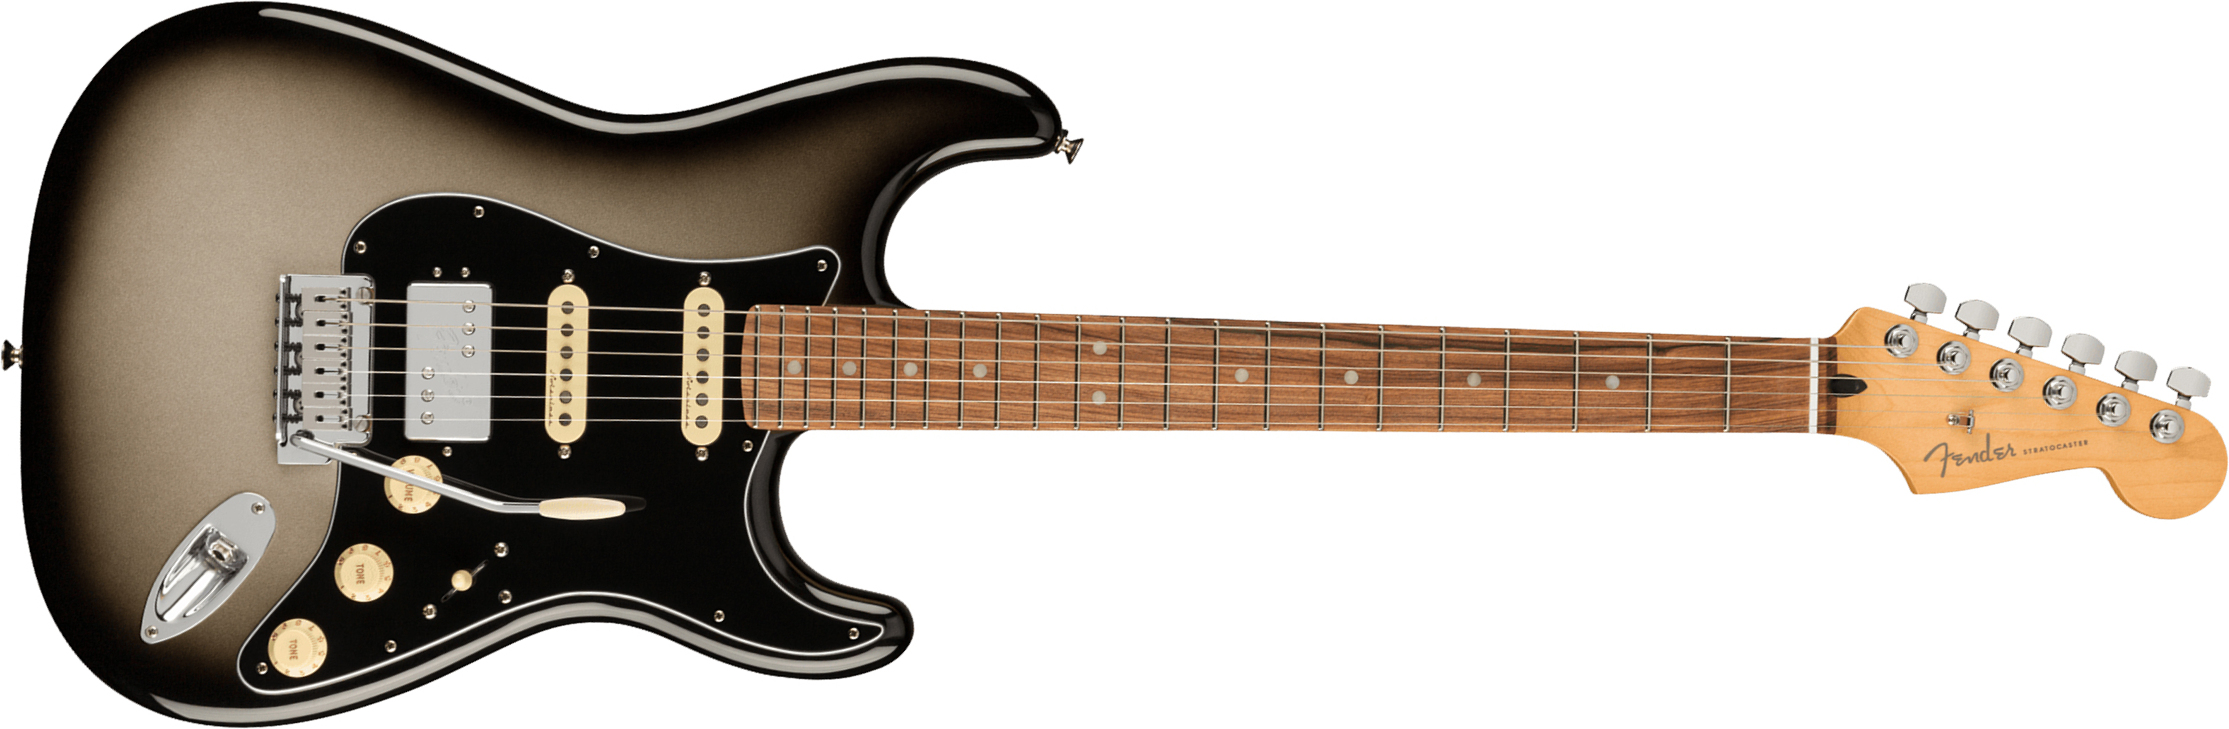 Fender Strat Player Plus Mex Hss Trem Pf - Silverburst - Guitare Électrique Forme Str - Main picture